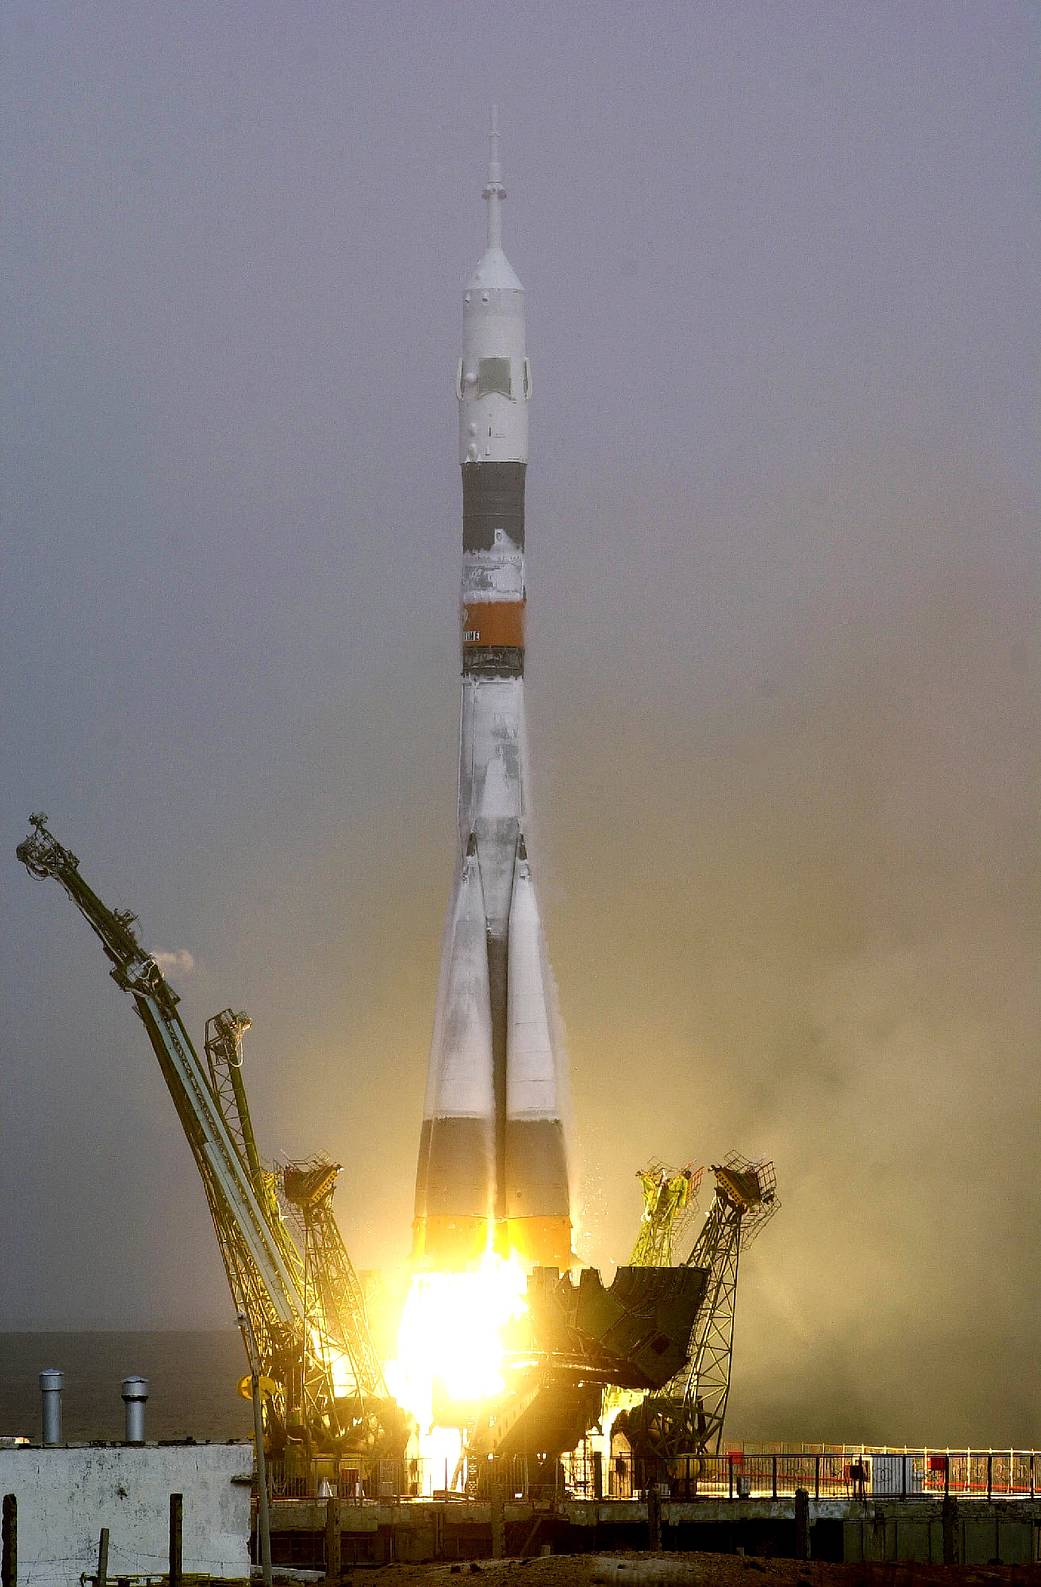 Soyuz spacecraft liftoff from Baikonur Cosmodrome in daytime.